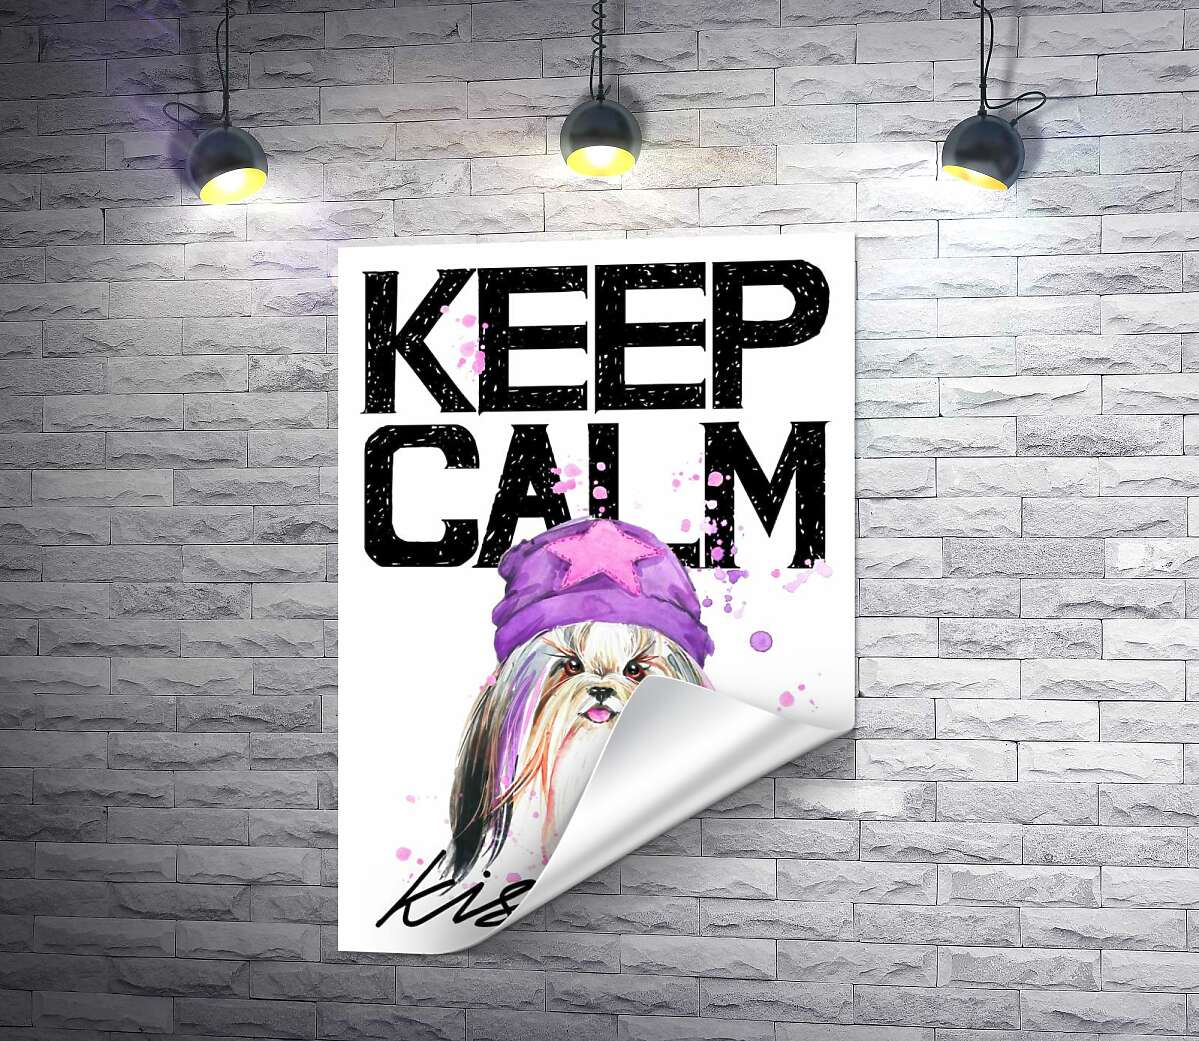 печать Модная собака среди надписи "keep calm and kiss me"